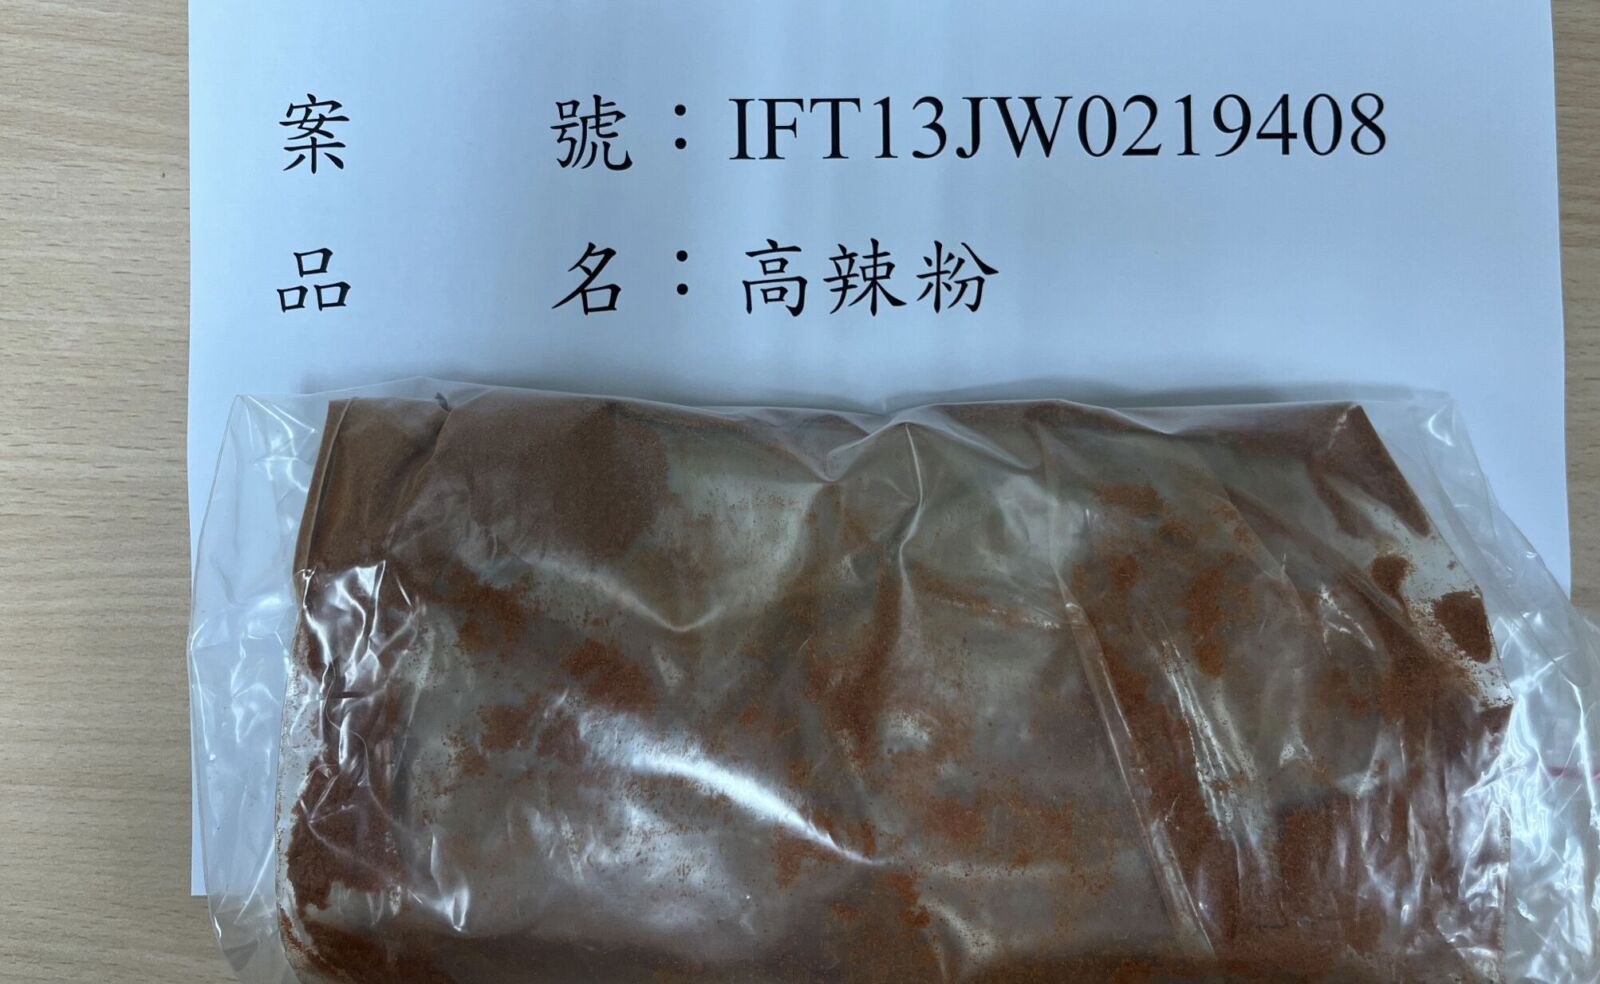 蘇丹紅又來了！近5千公斤中國「高辣粉」驗出蘇丹色素三號  海關全銷毀